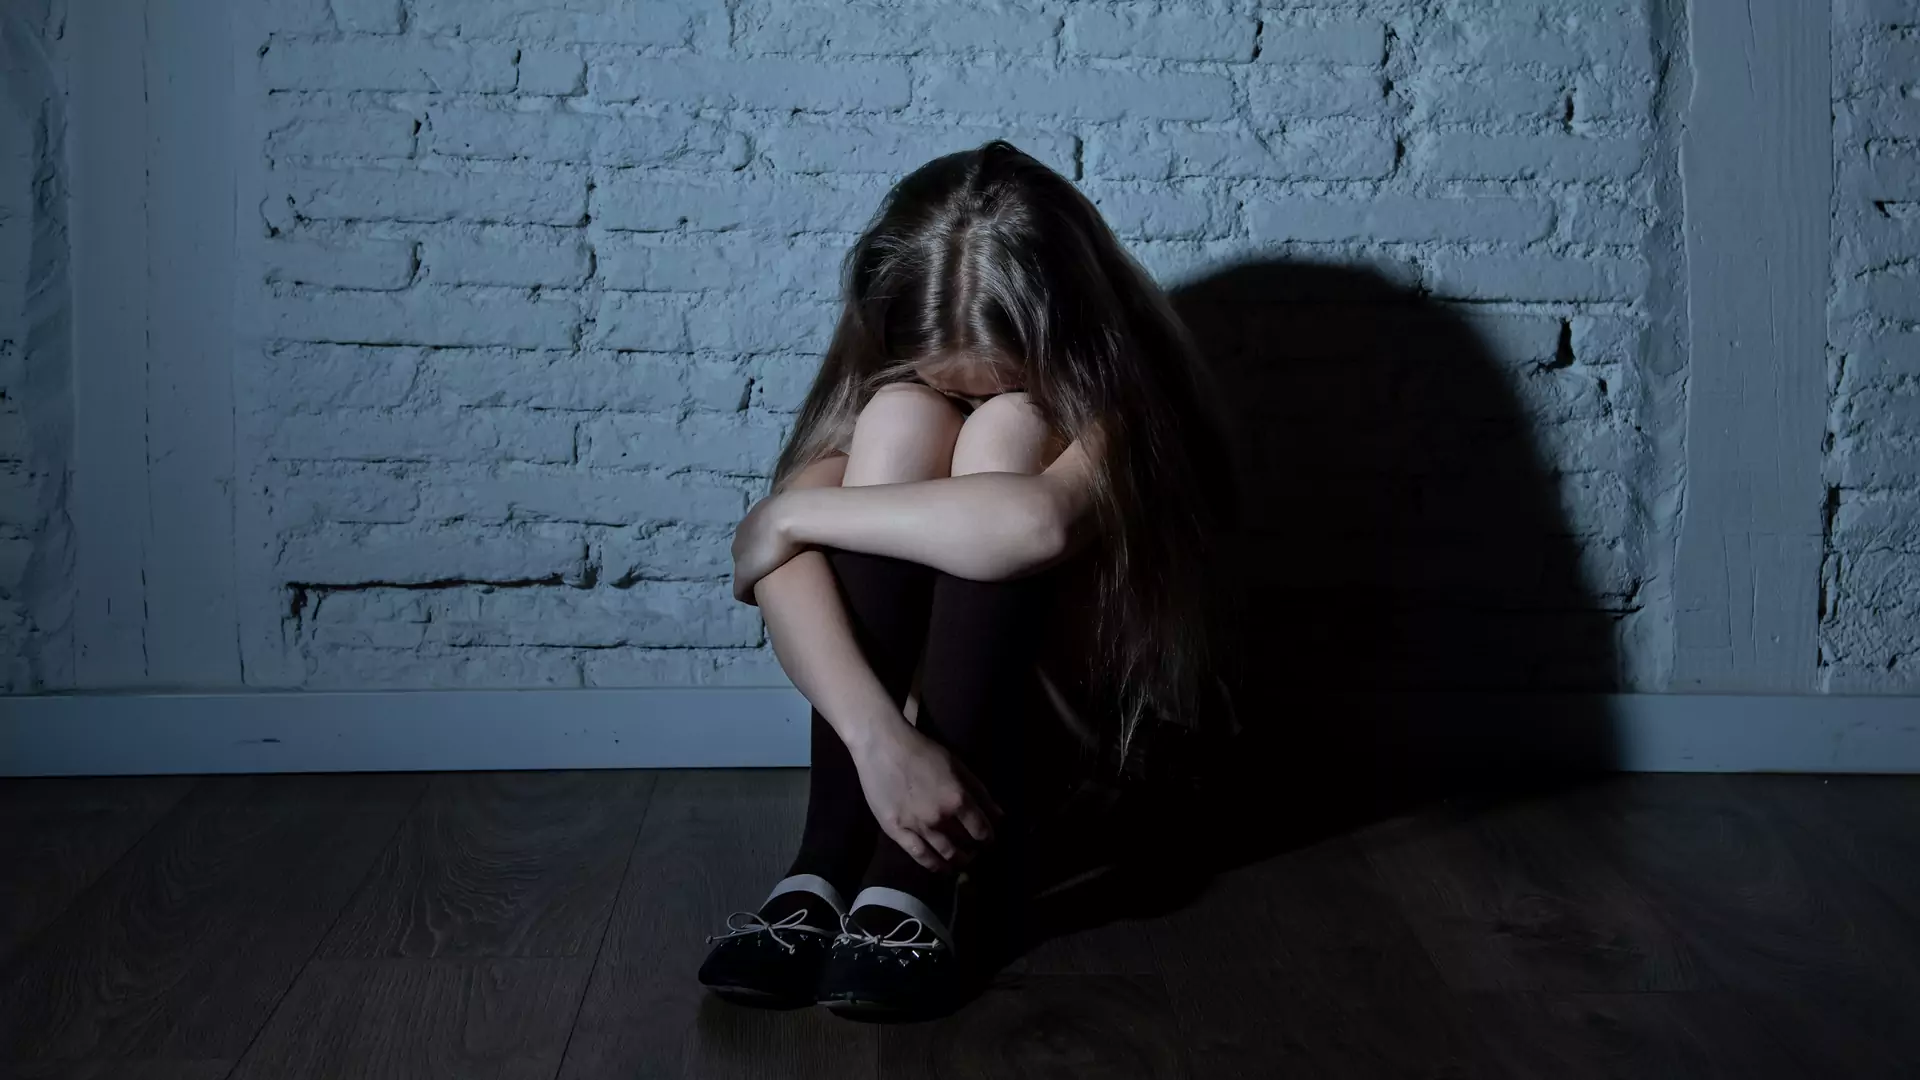 Od 1 stycznia dzieci podjęły kilkadziesiąt prób samobójczych. "Czują się samotne i smutne"